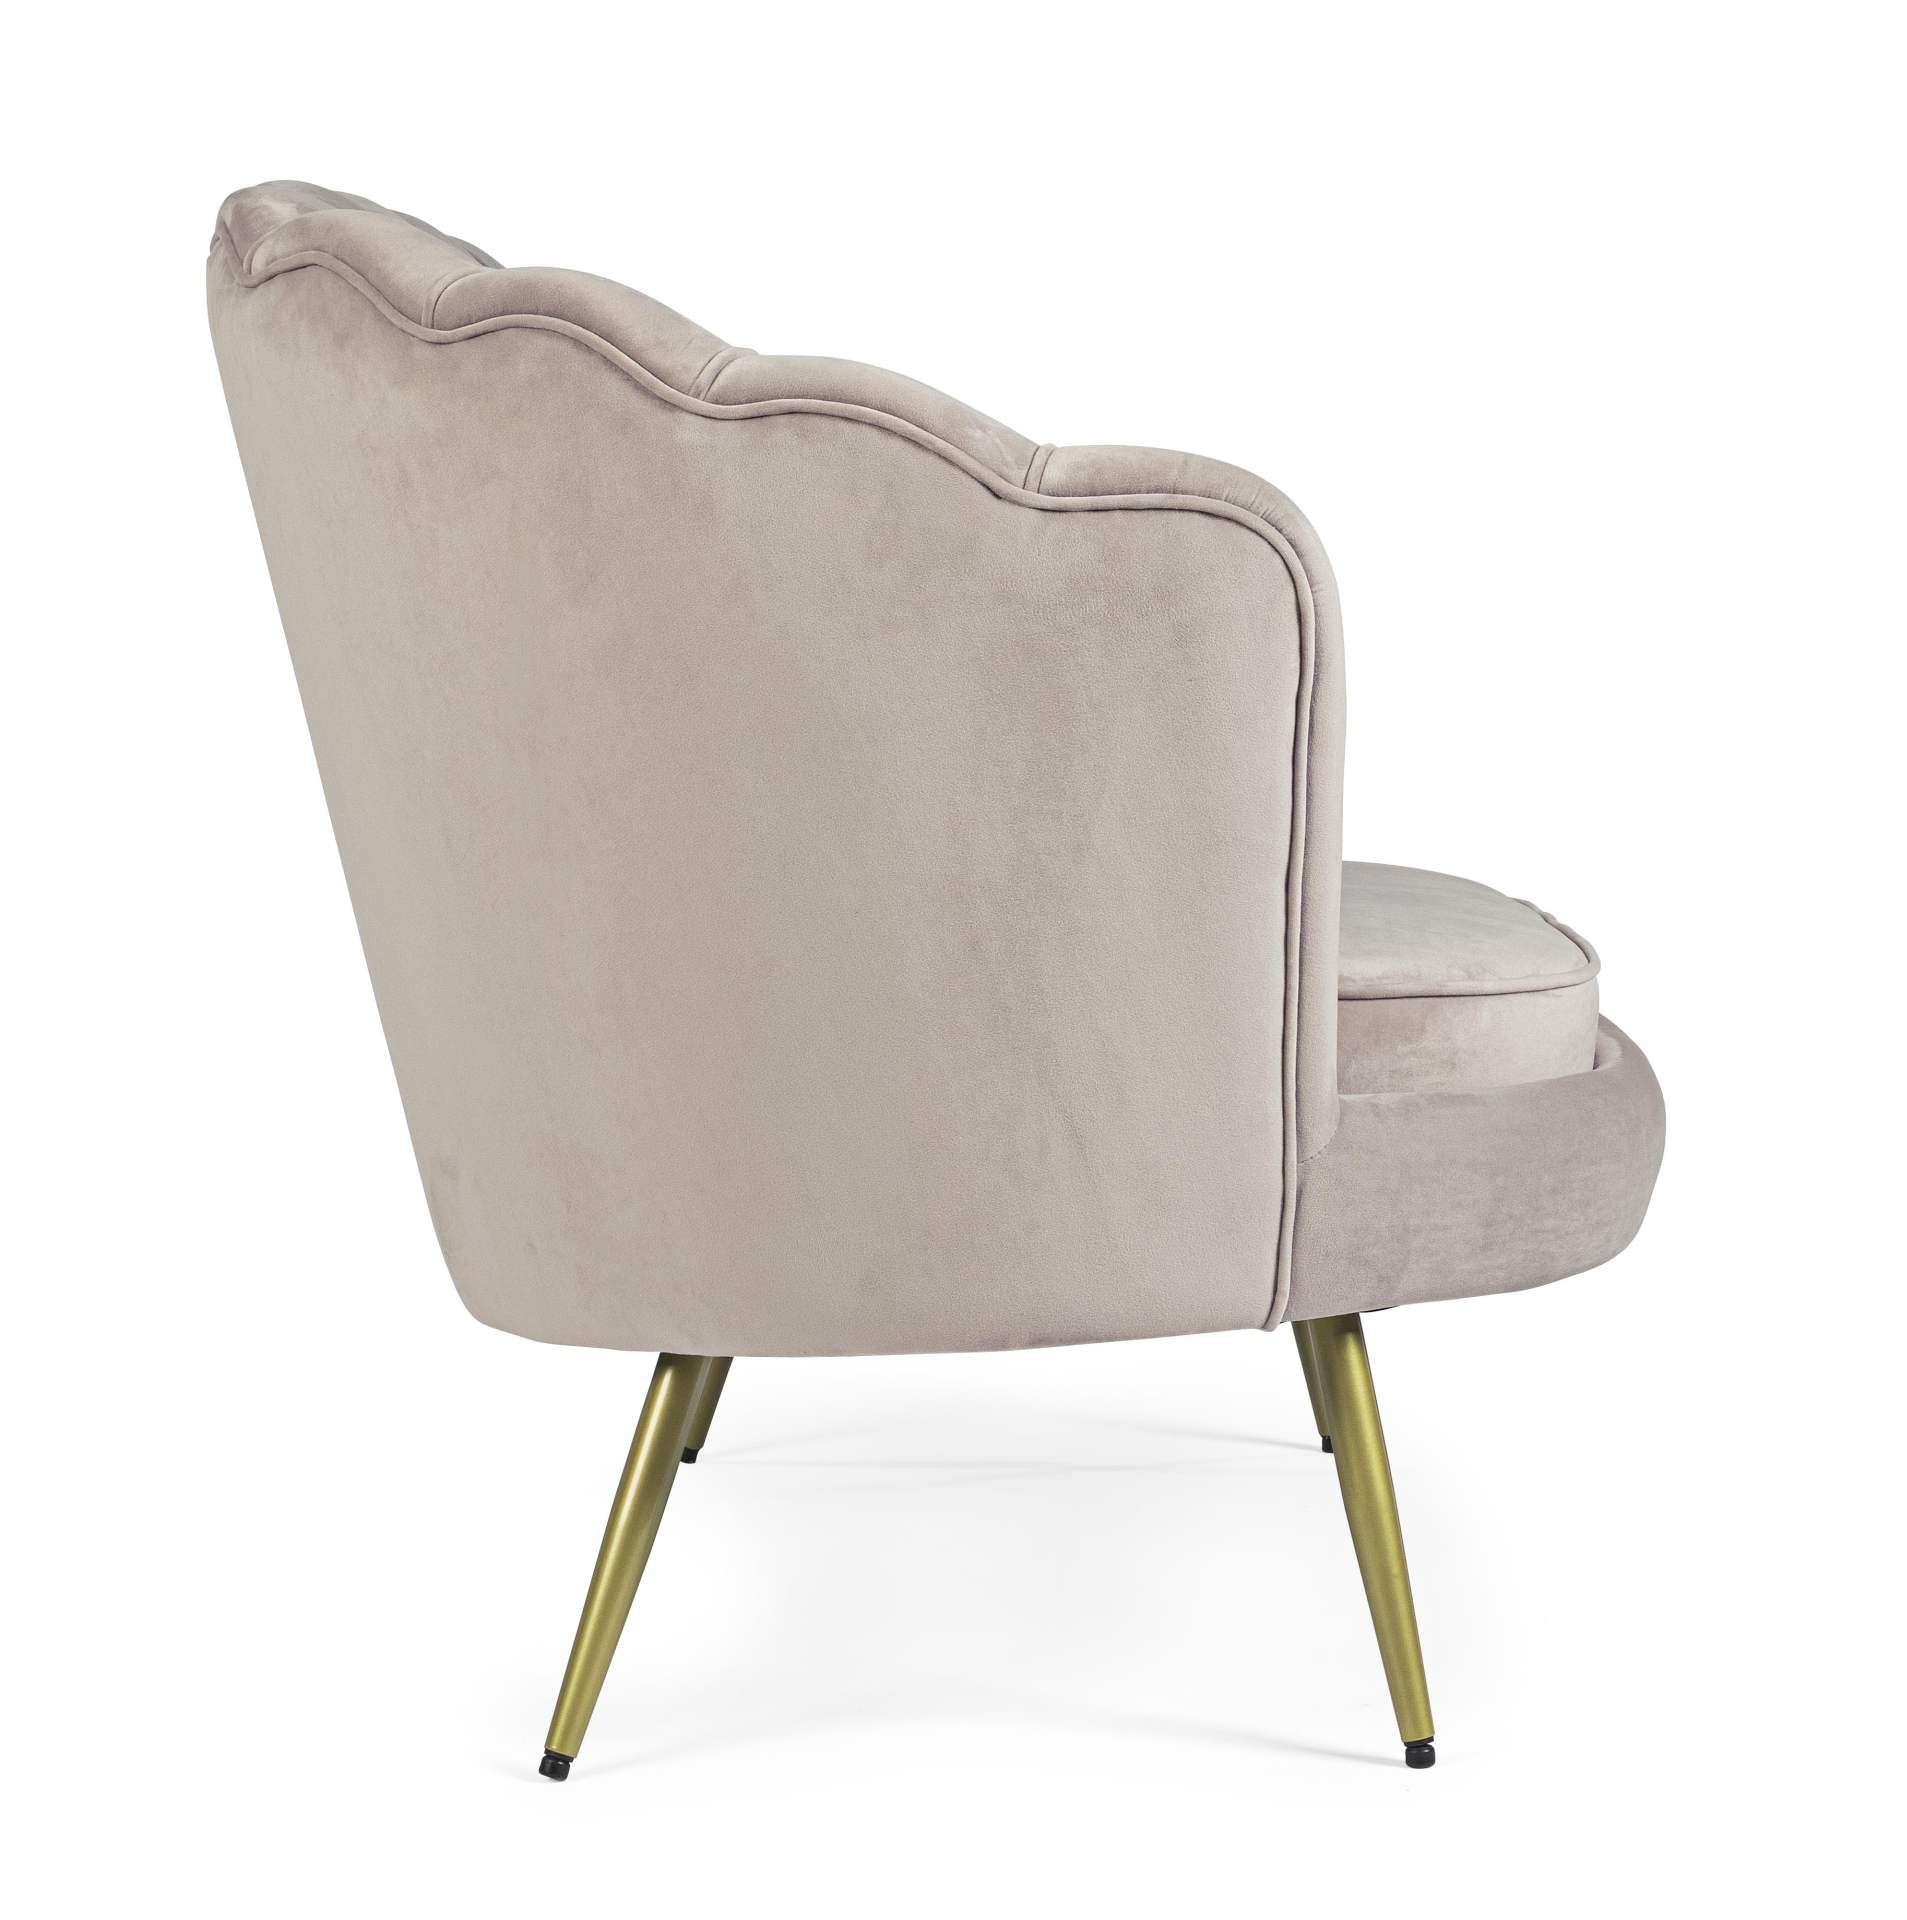 Das Sofa Giliola überzeugt mit seinem modernen Design. Gefertigt wurde es aus Stoff in Samt-Optik, welcher einen hellgrauen Farbton besitzt. Das Gestell ist aus Metall und hat eine goldene Farbe. Das Sofa ist in der Ausführung als 2-Sitzer. Die Breite bet